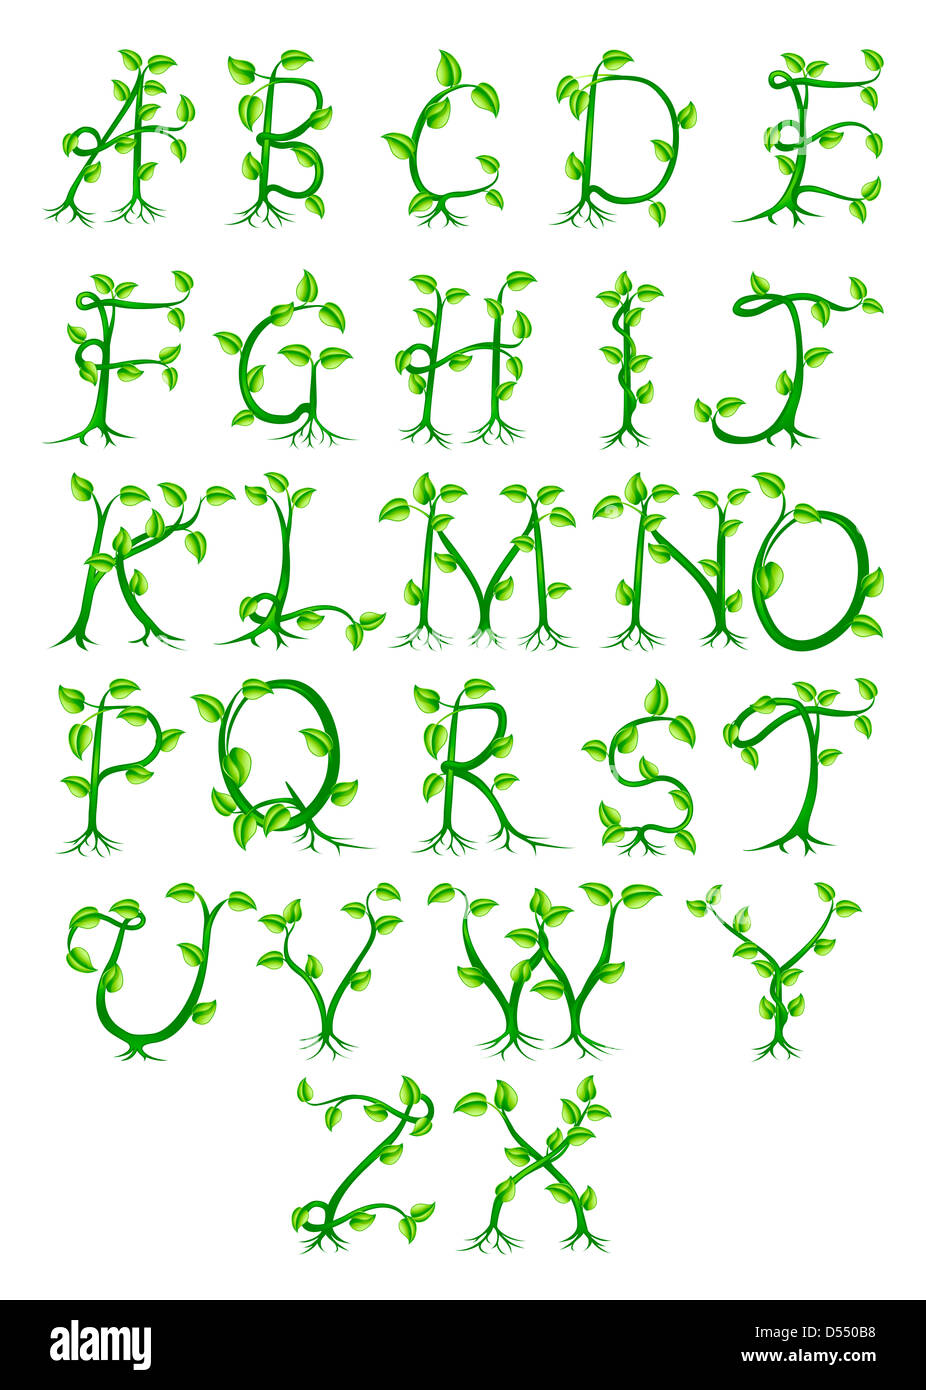 Eine komplette dekoratives Alphabet bestehend aus Buchstaben, die von grünen Pflanzen wachsen Stockfoto